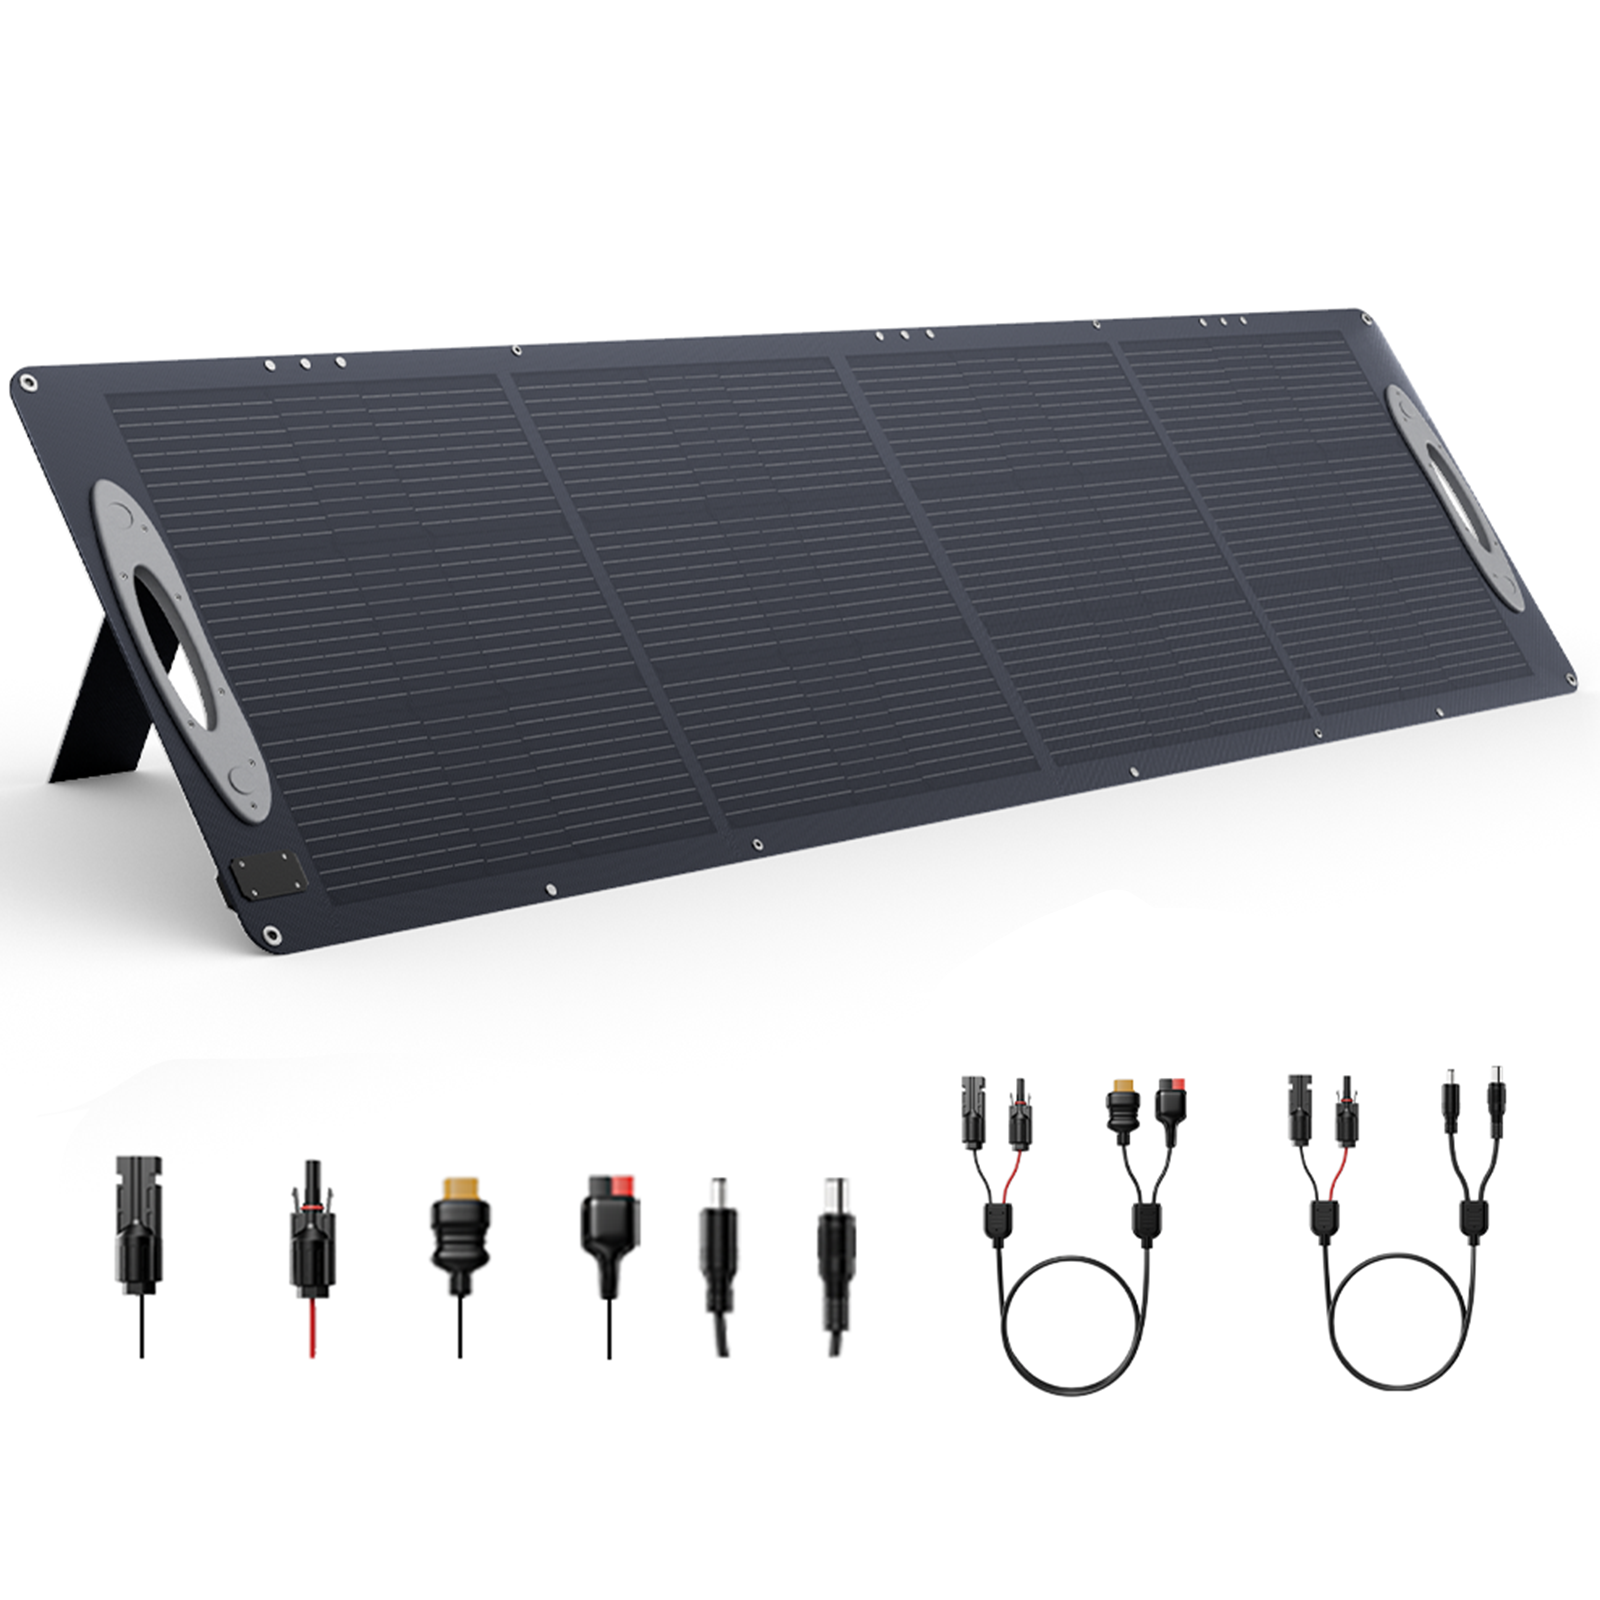 Panel solar ETFE VDL SC0201 de 200W en el Reino Unido. Paneles solares de 5V USB 20V DC, eficiencia del 23,5%. Portátil, plegable y apto para patios, vehículos recreativos, exteriores, acampadas y emergencias de cortes de energía.